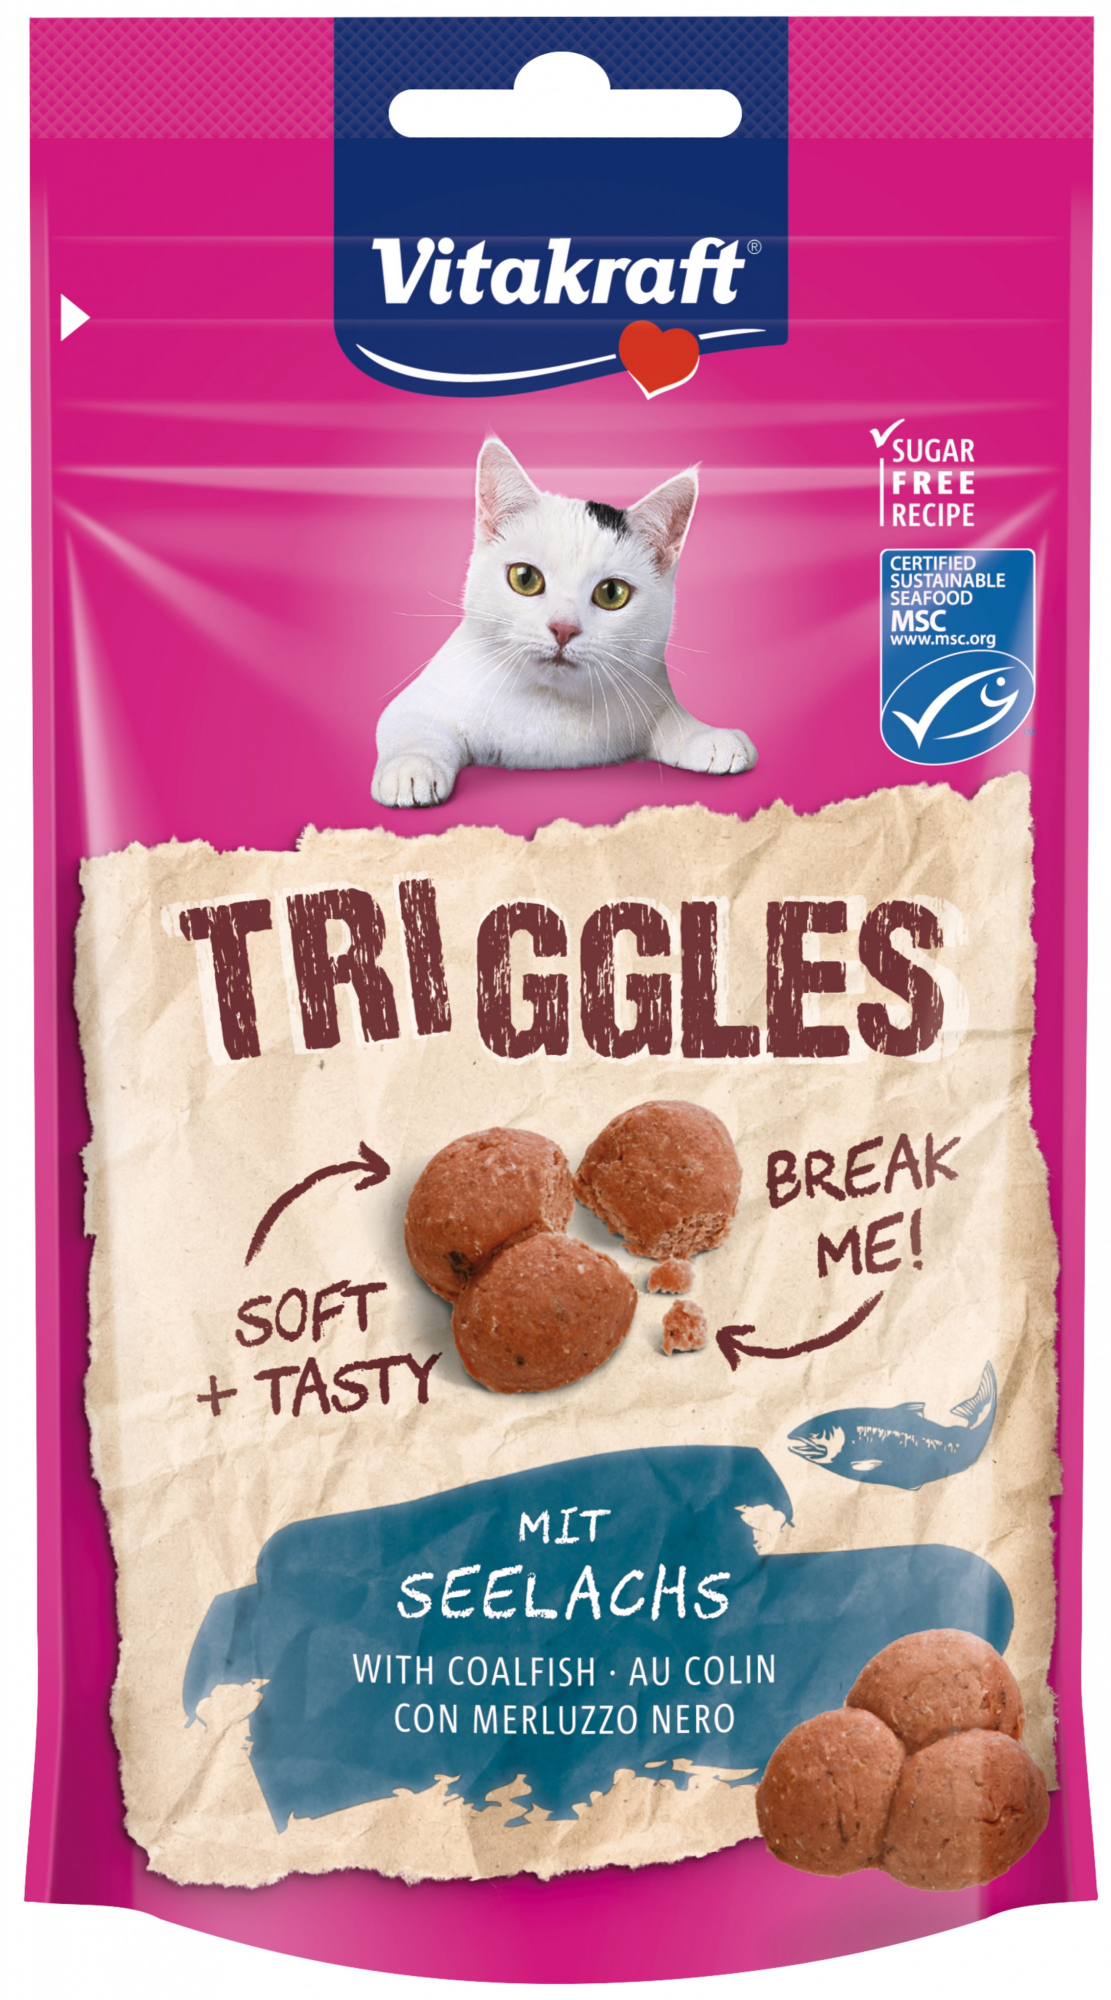 VITAKRAFT Triggles - Katzensnacks - verschiedene Geschmacksrichtungen erhältlich